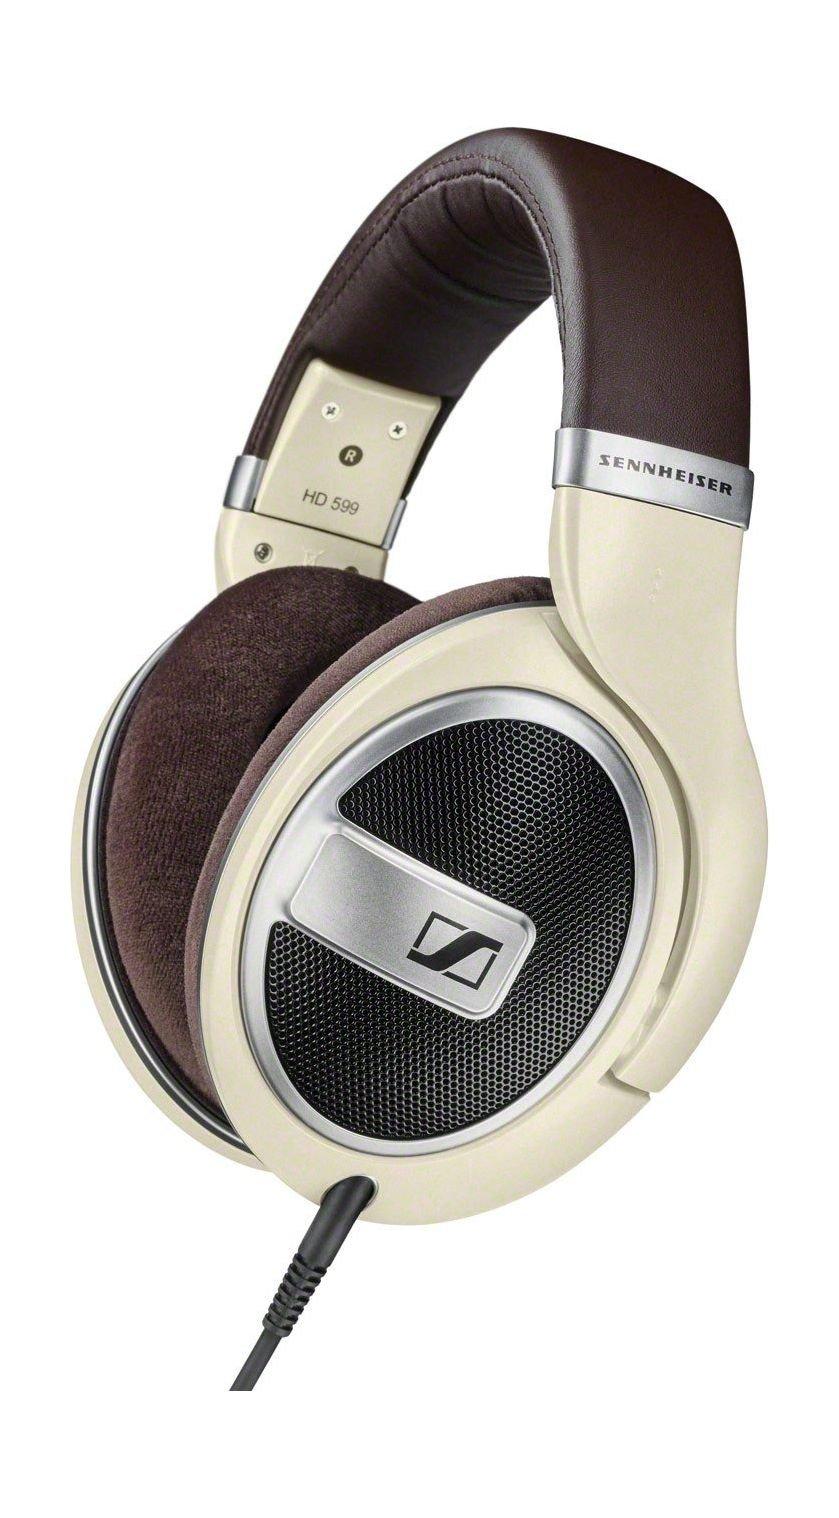 Buy Sennheiser open back headphone (hd 599) - black in Kuwait